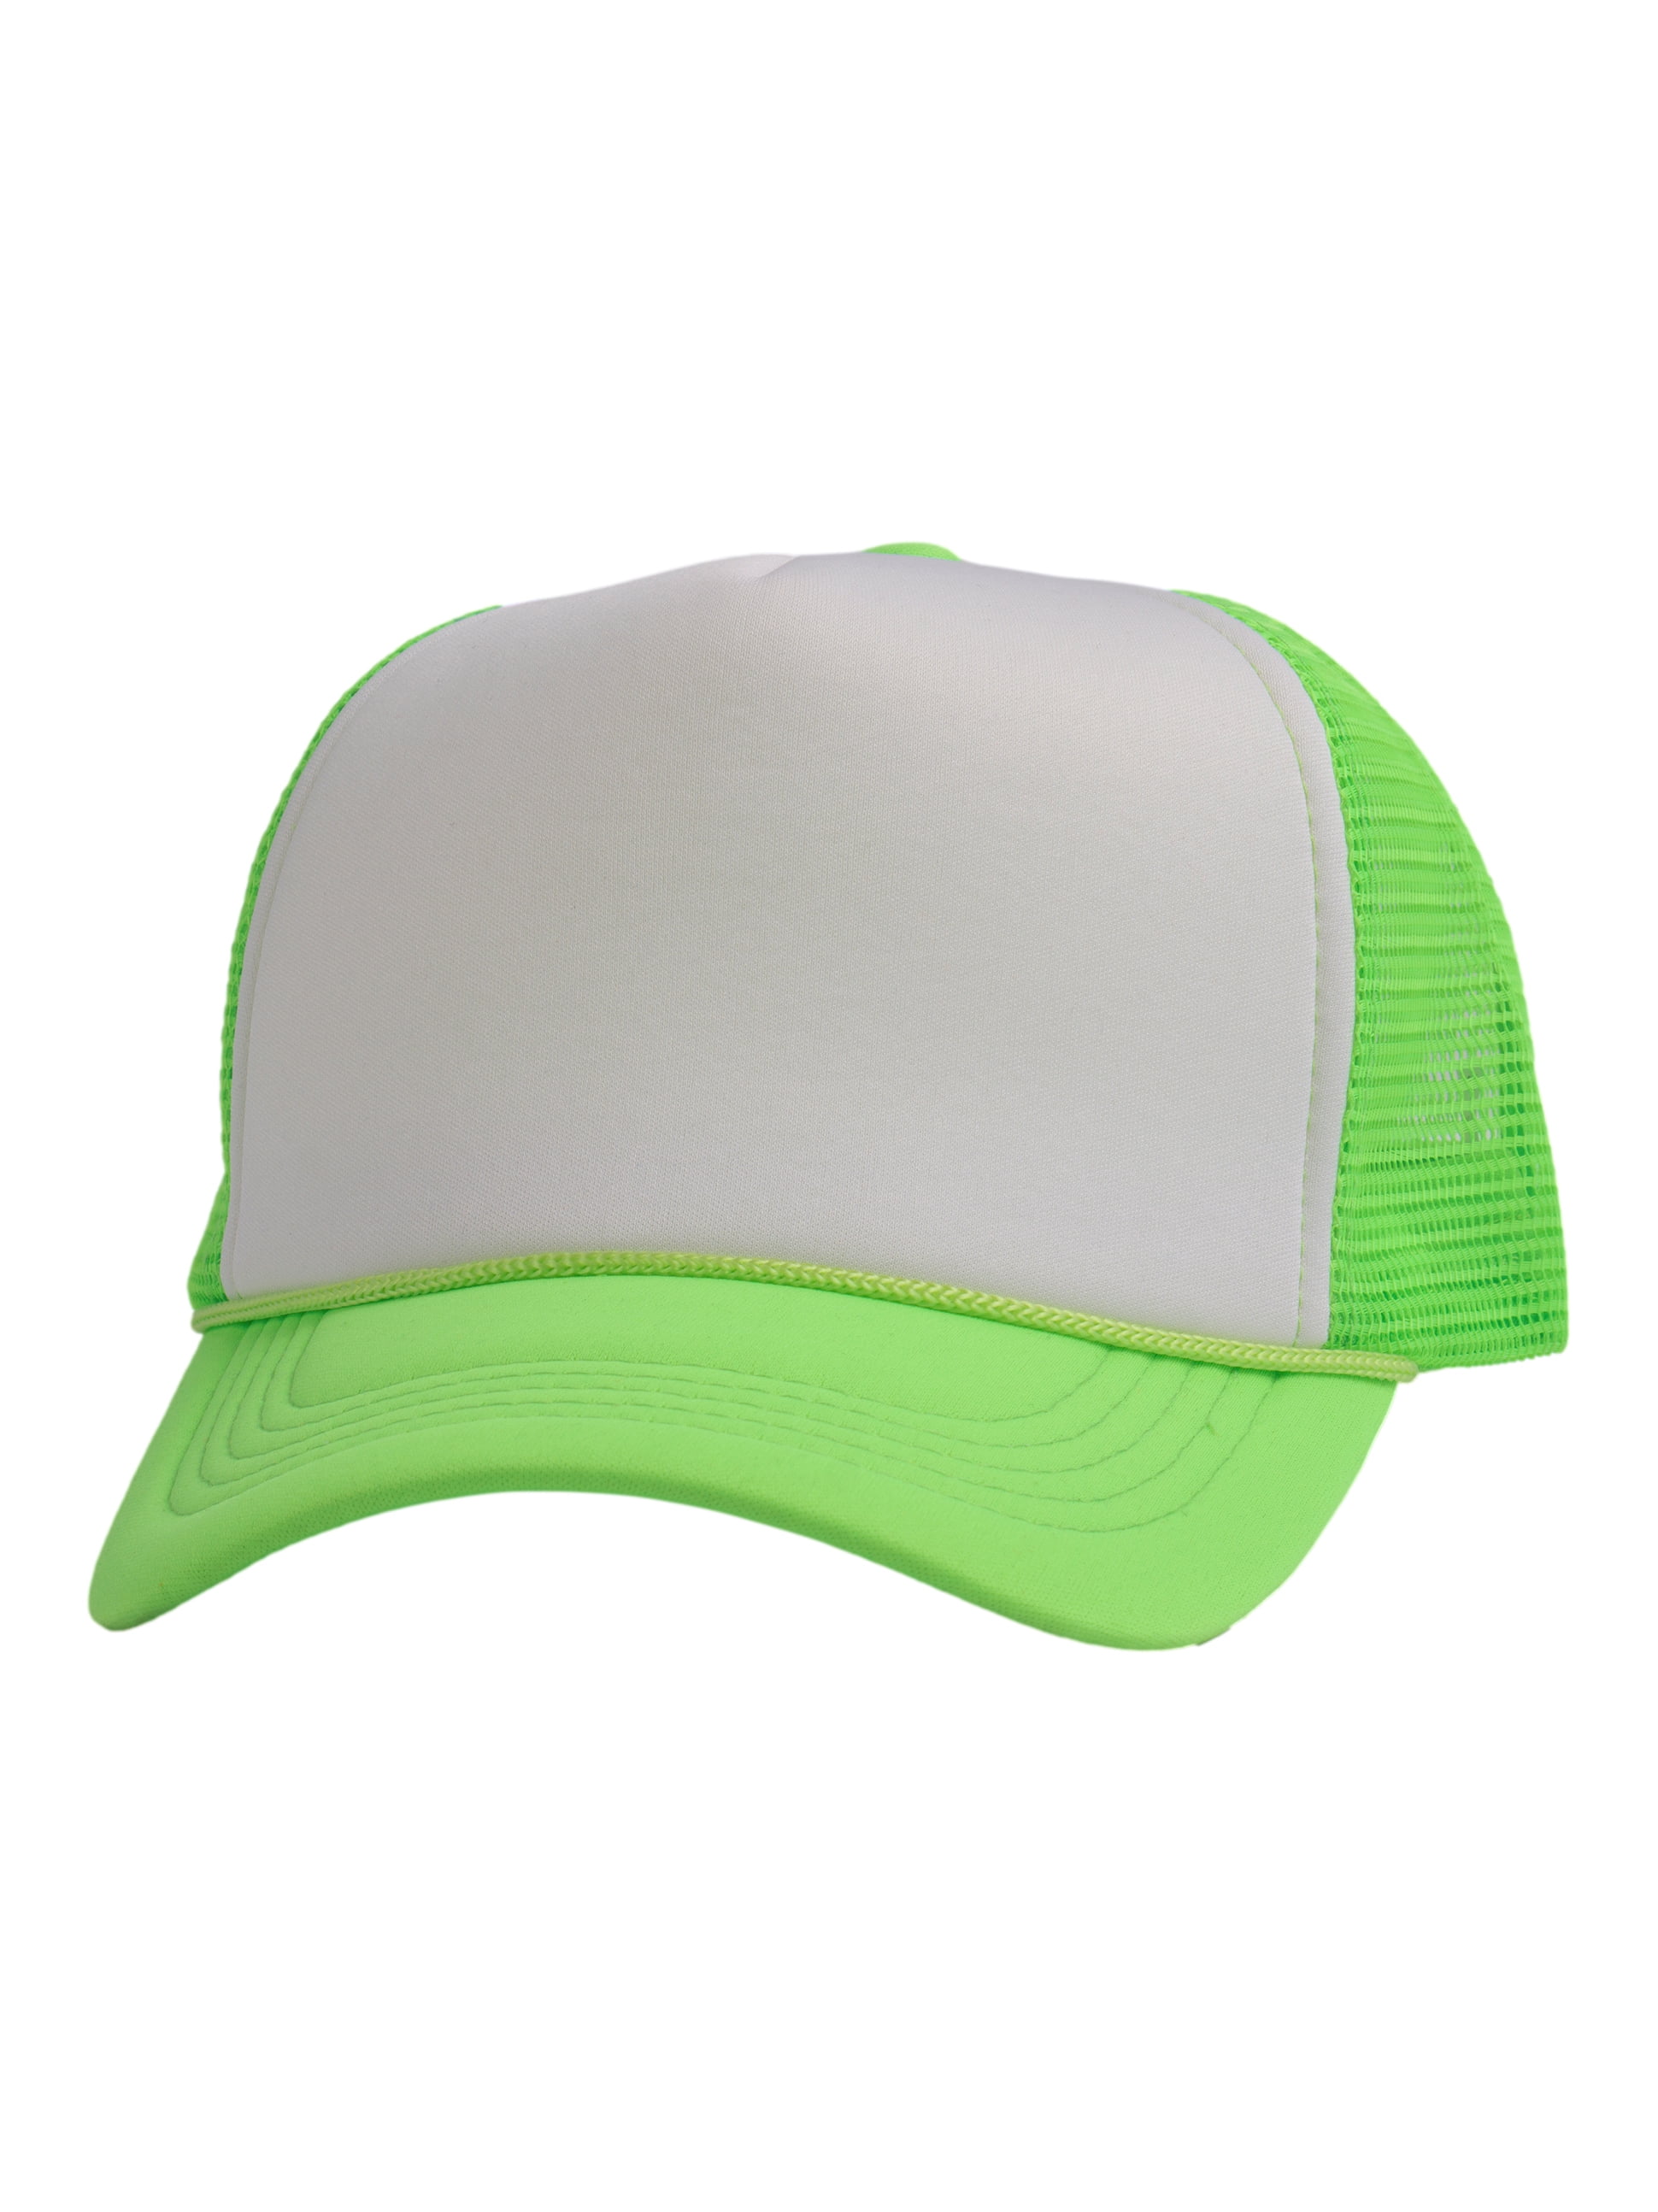 Top Headwear Blank Trucker Hat - Mens Trucker Hats Foam Mesh Snapback  White/Neon Green 